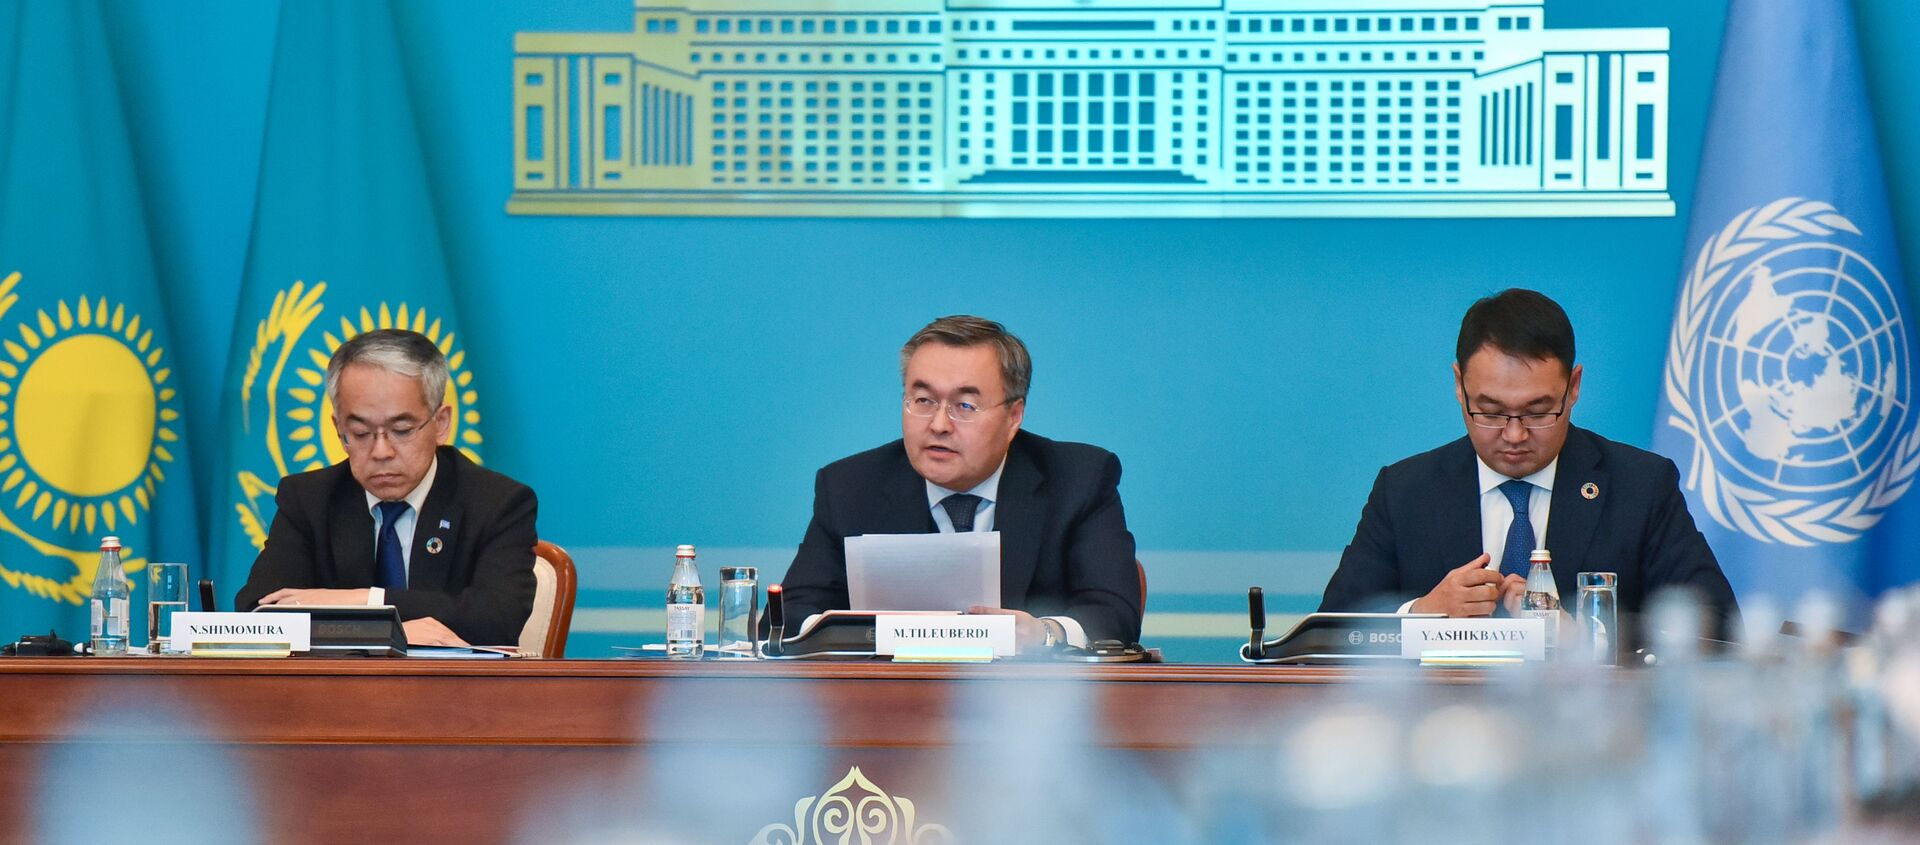 Министр иностранных дел Казахстана Мухтар Тлеуберди (в центре) на брифинге в МИД - Sputnik Казахстан, 1920, 30.12.2020